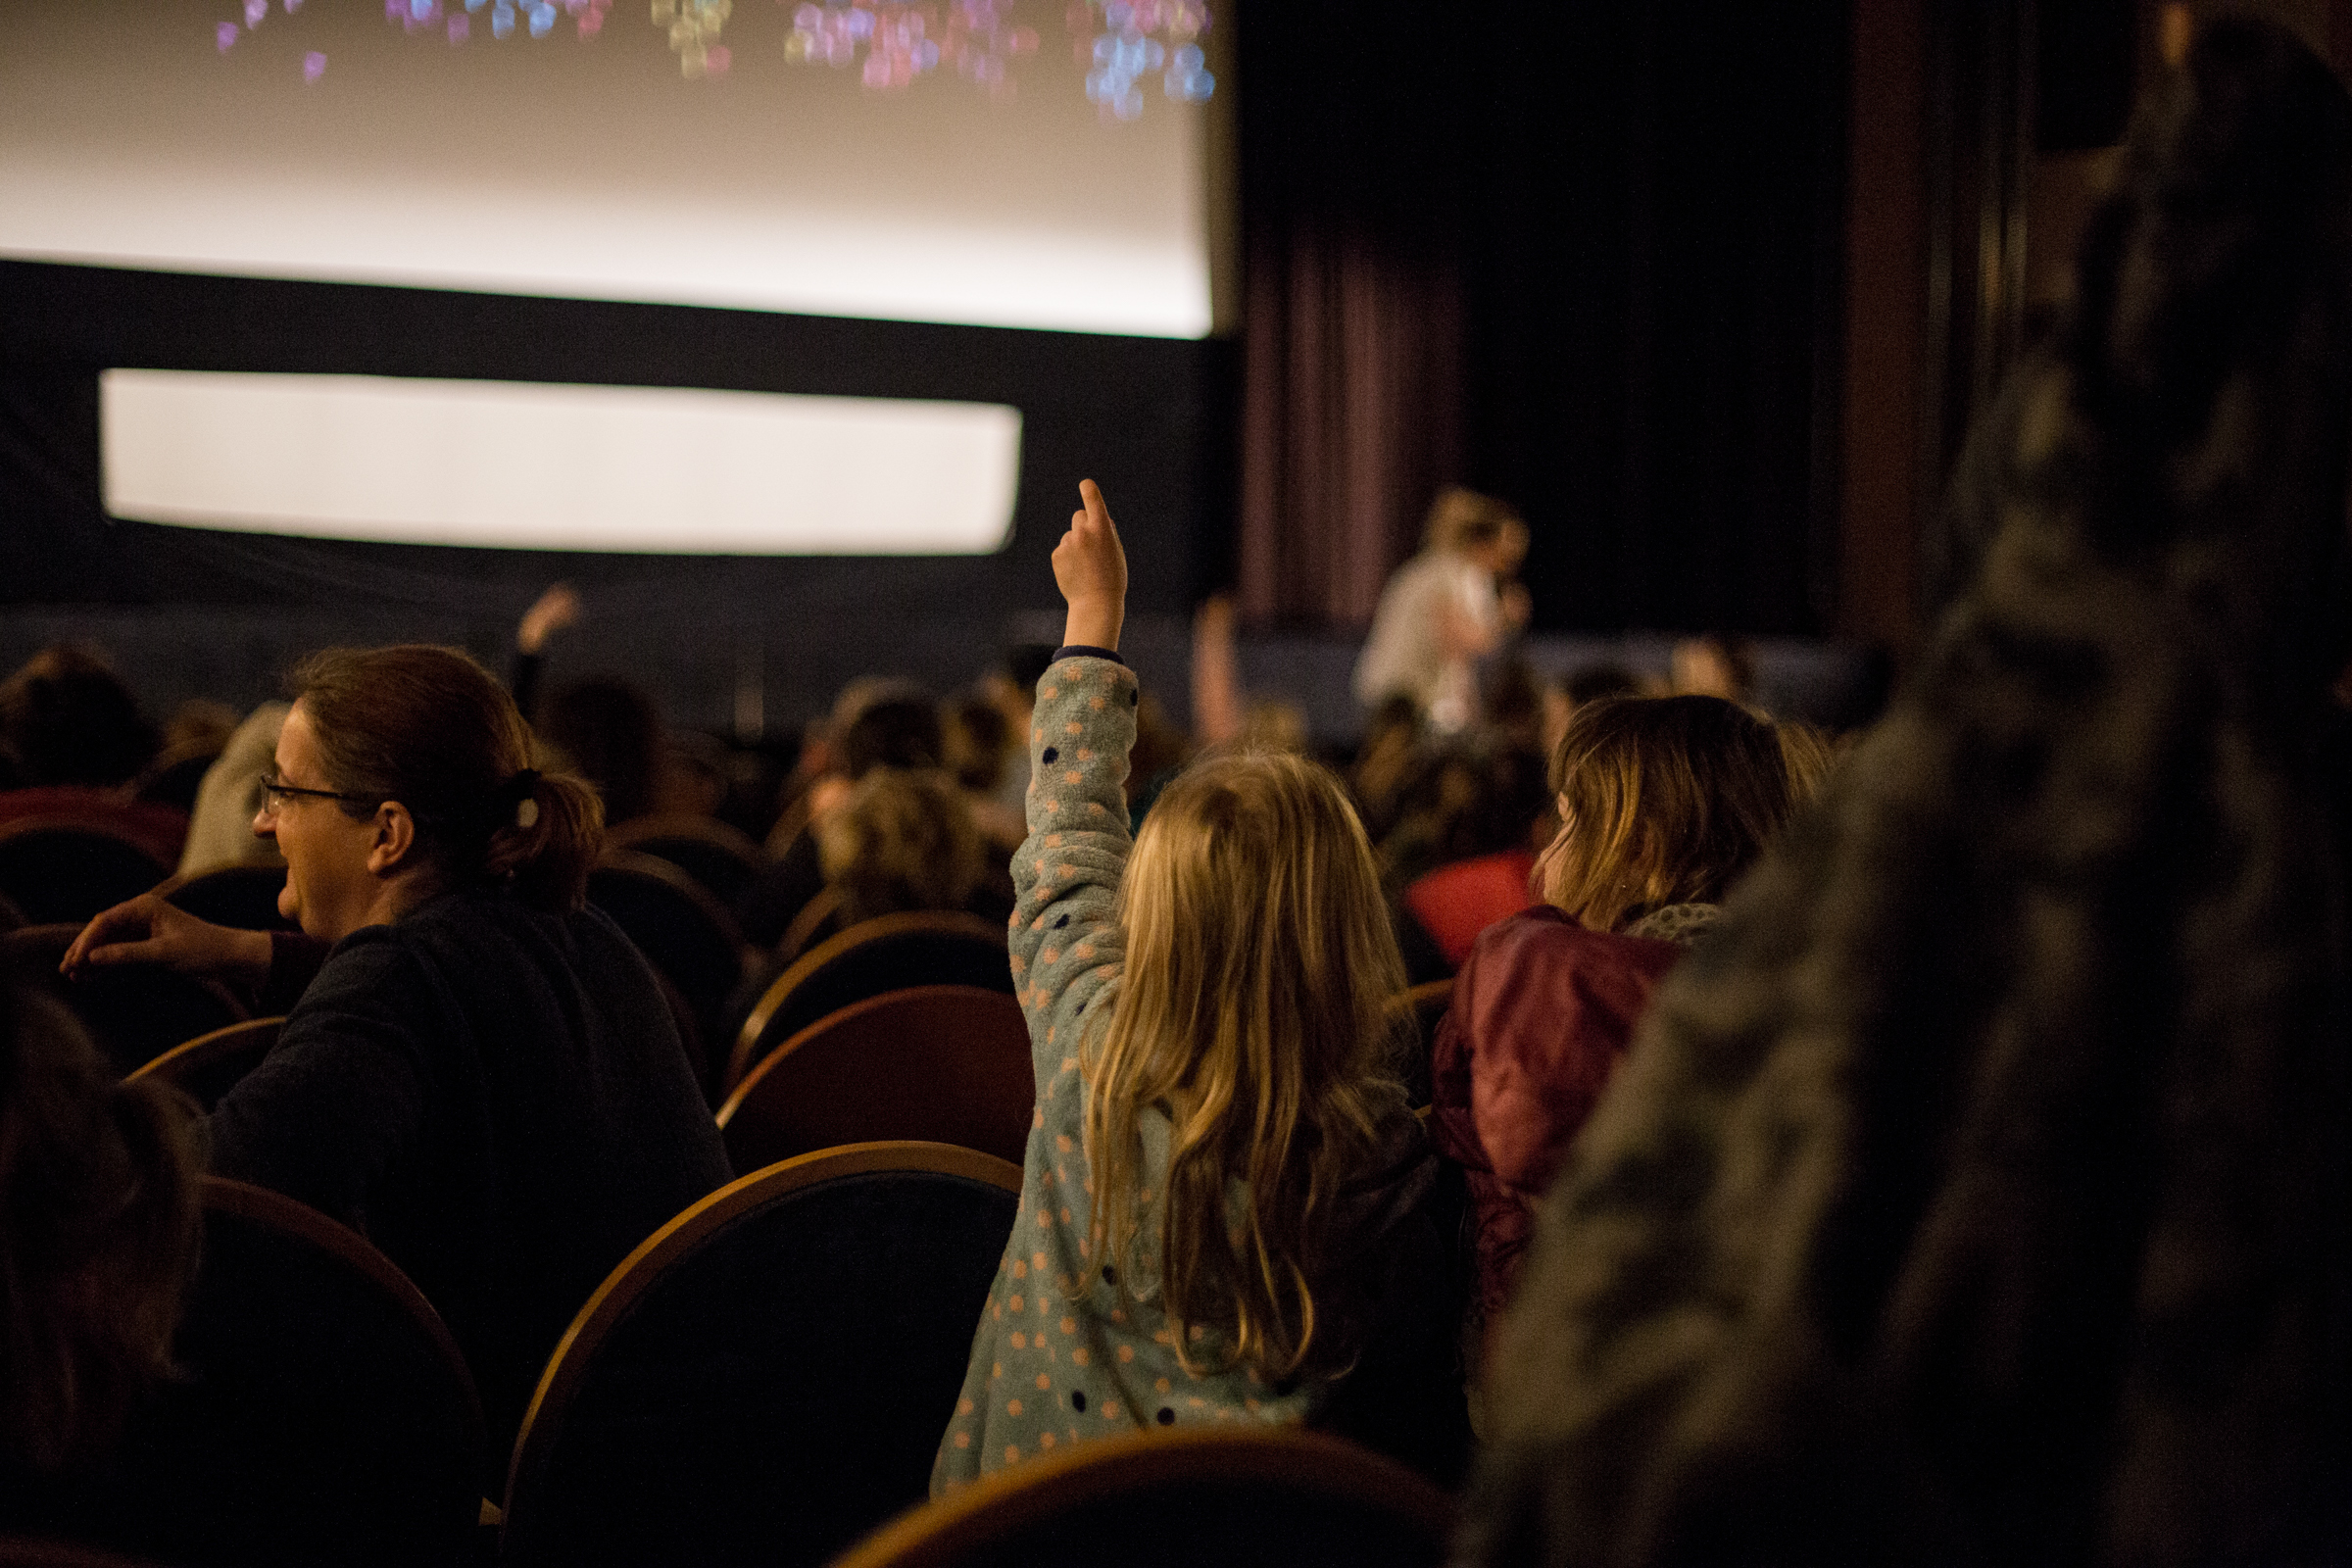 Děti v kině zvedají ruce a povídají si o filmu. V sále je tlumené osvětlení.